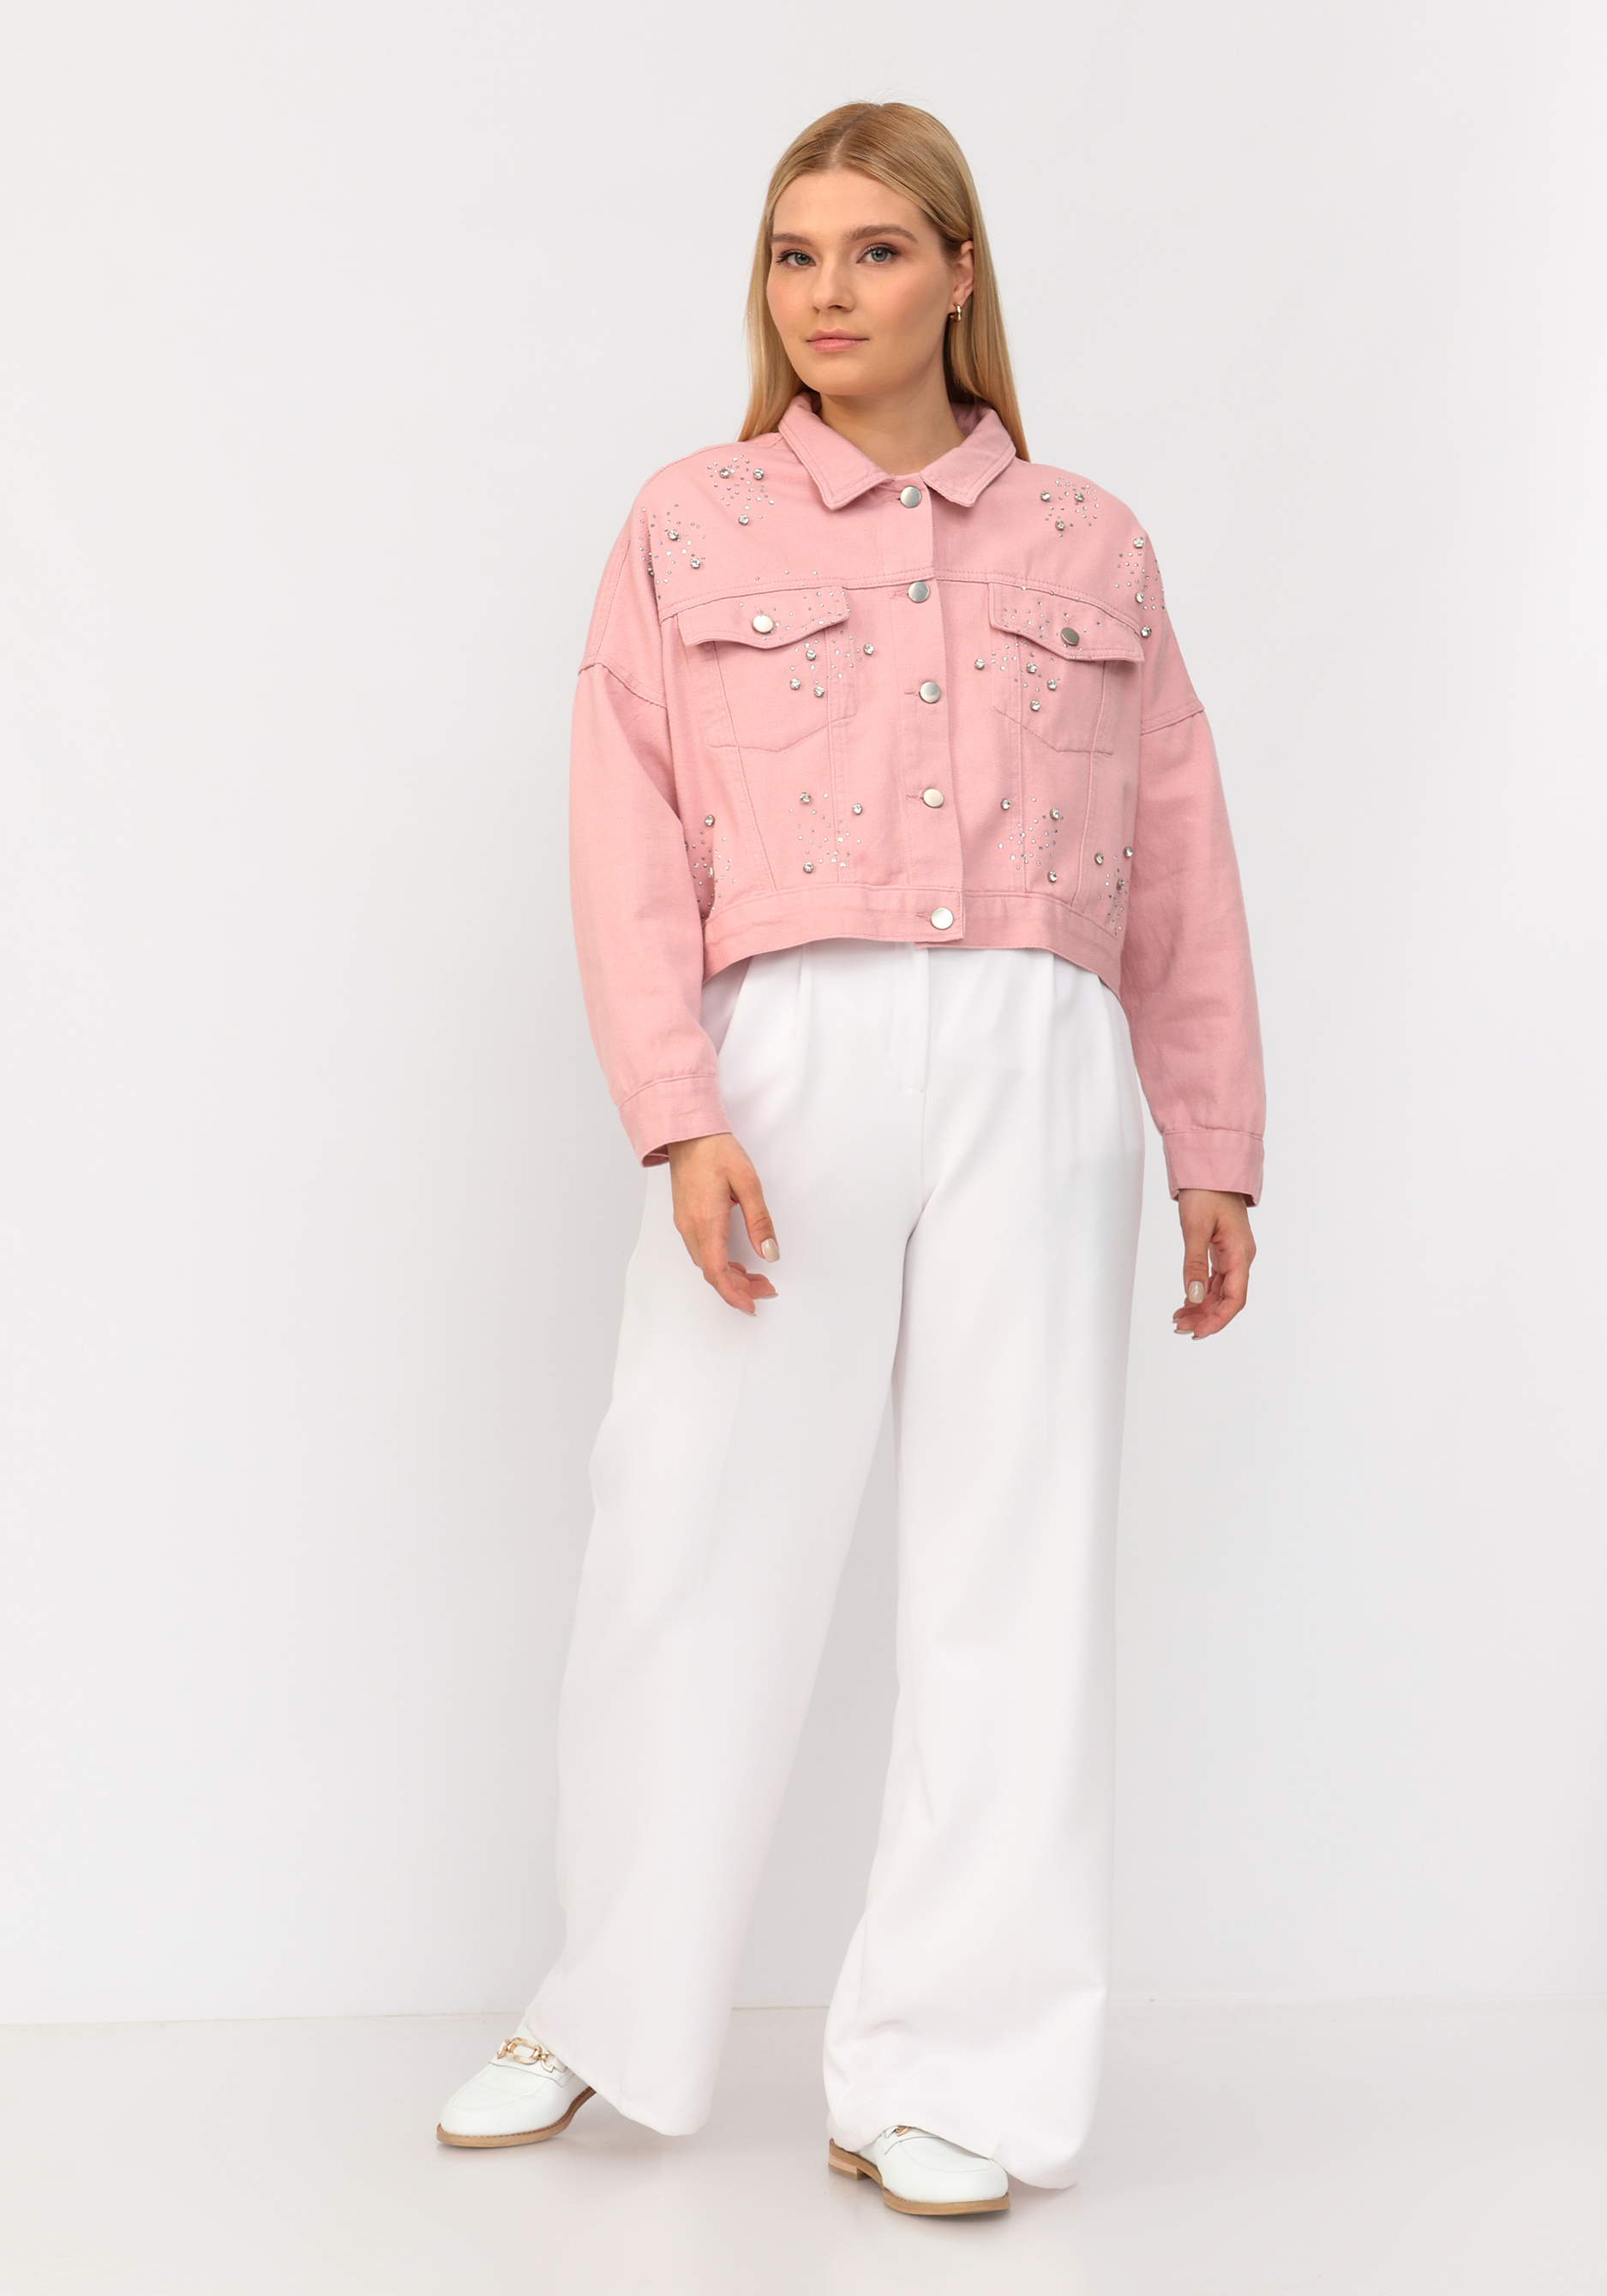 Джинсовая куртка со стразами No name, размер 52-54, цвет розовый - фото 7